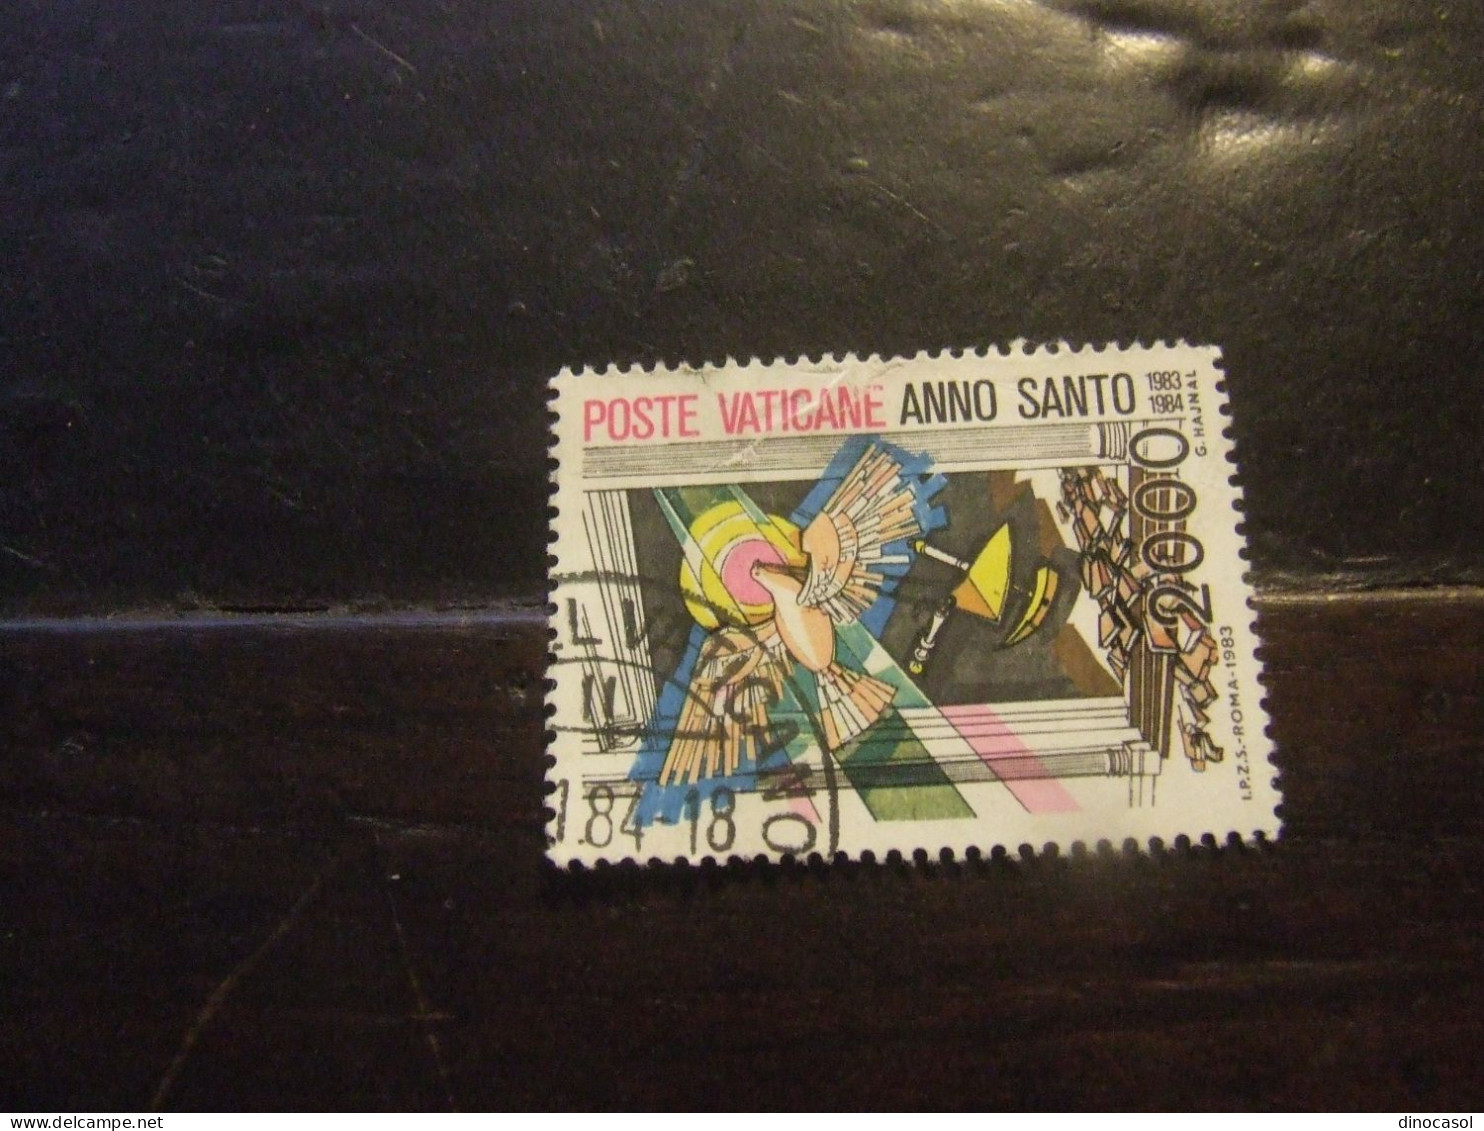 VATICANO 1983 ANNO SANTO 2000 L USATO - Used Stamps